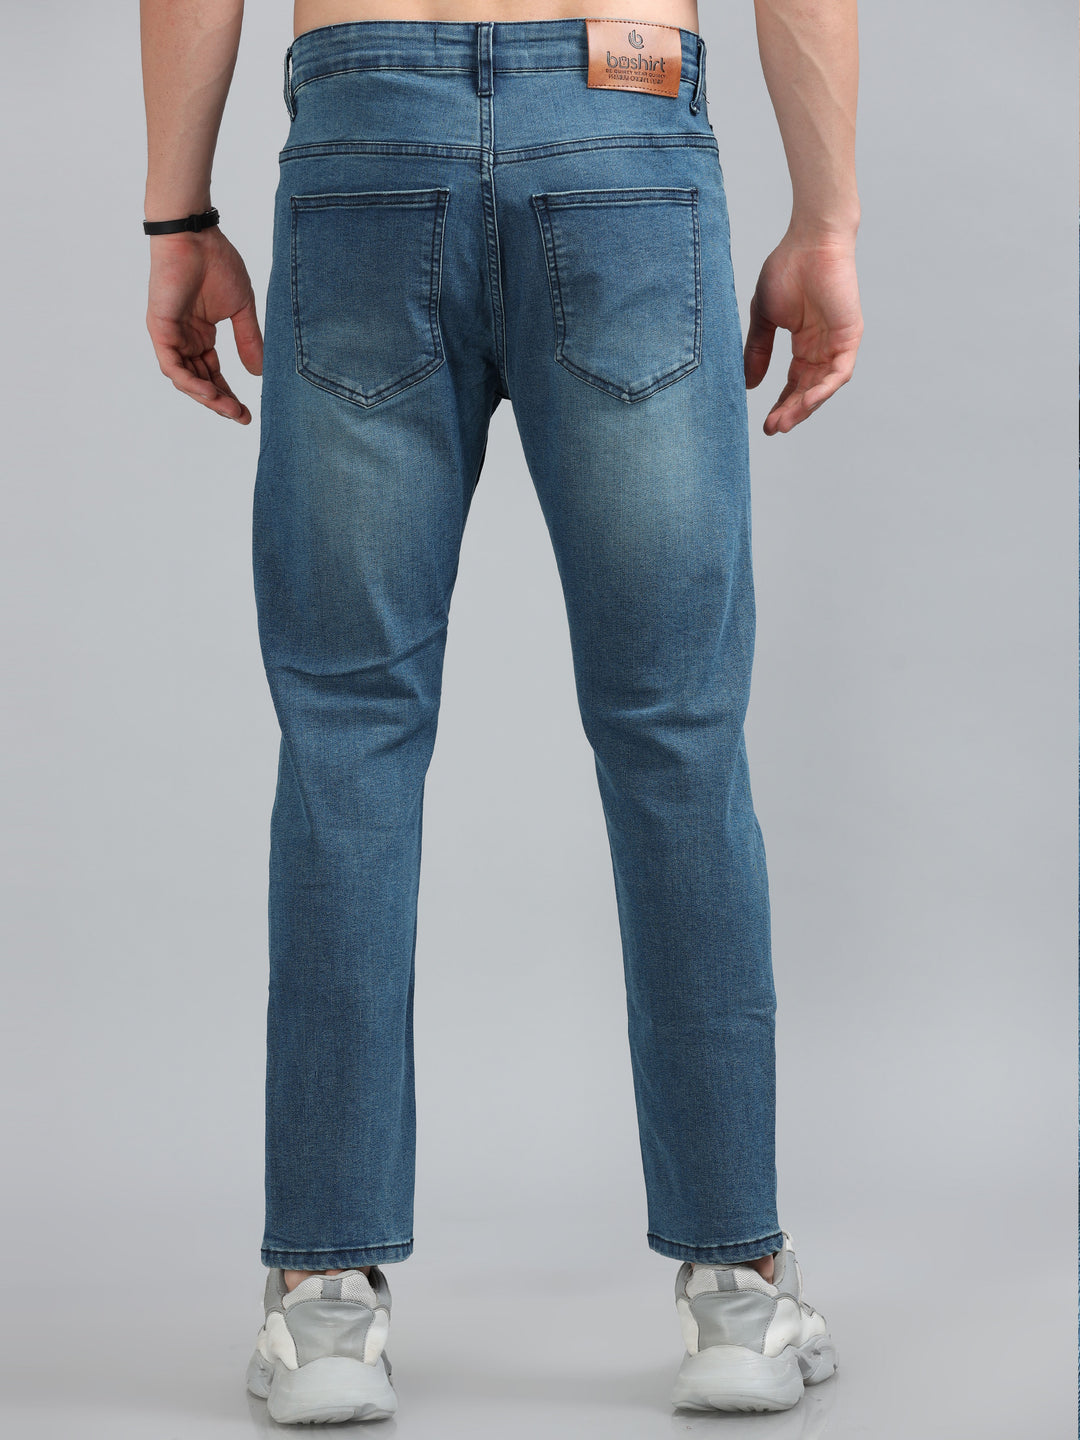 Pebble Blue Solid Slim Fit Jeans Jeans Bushirt   